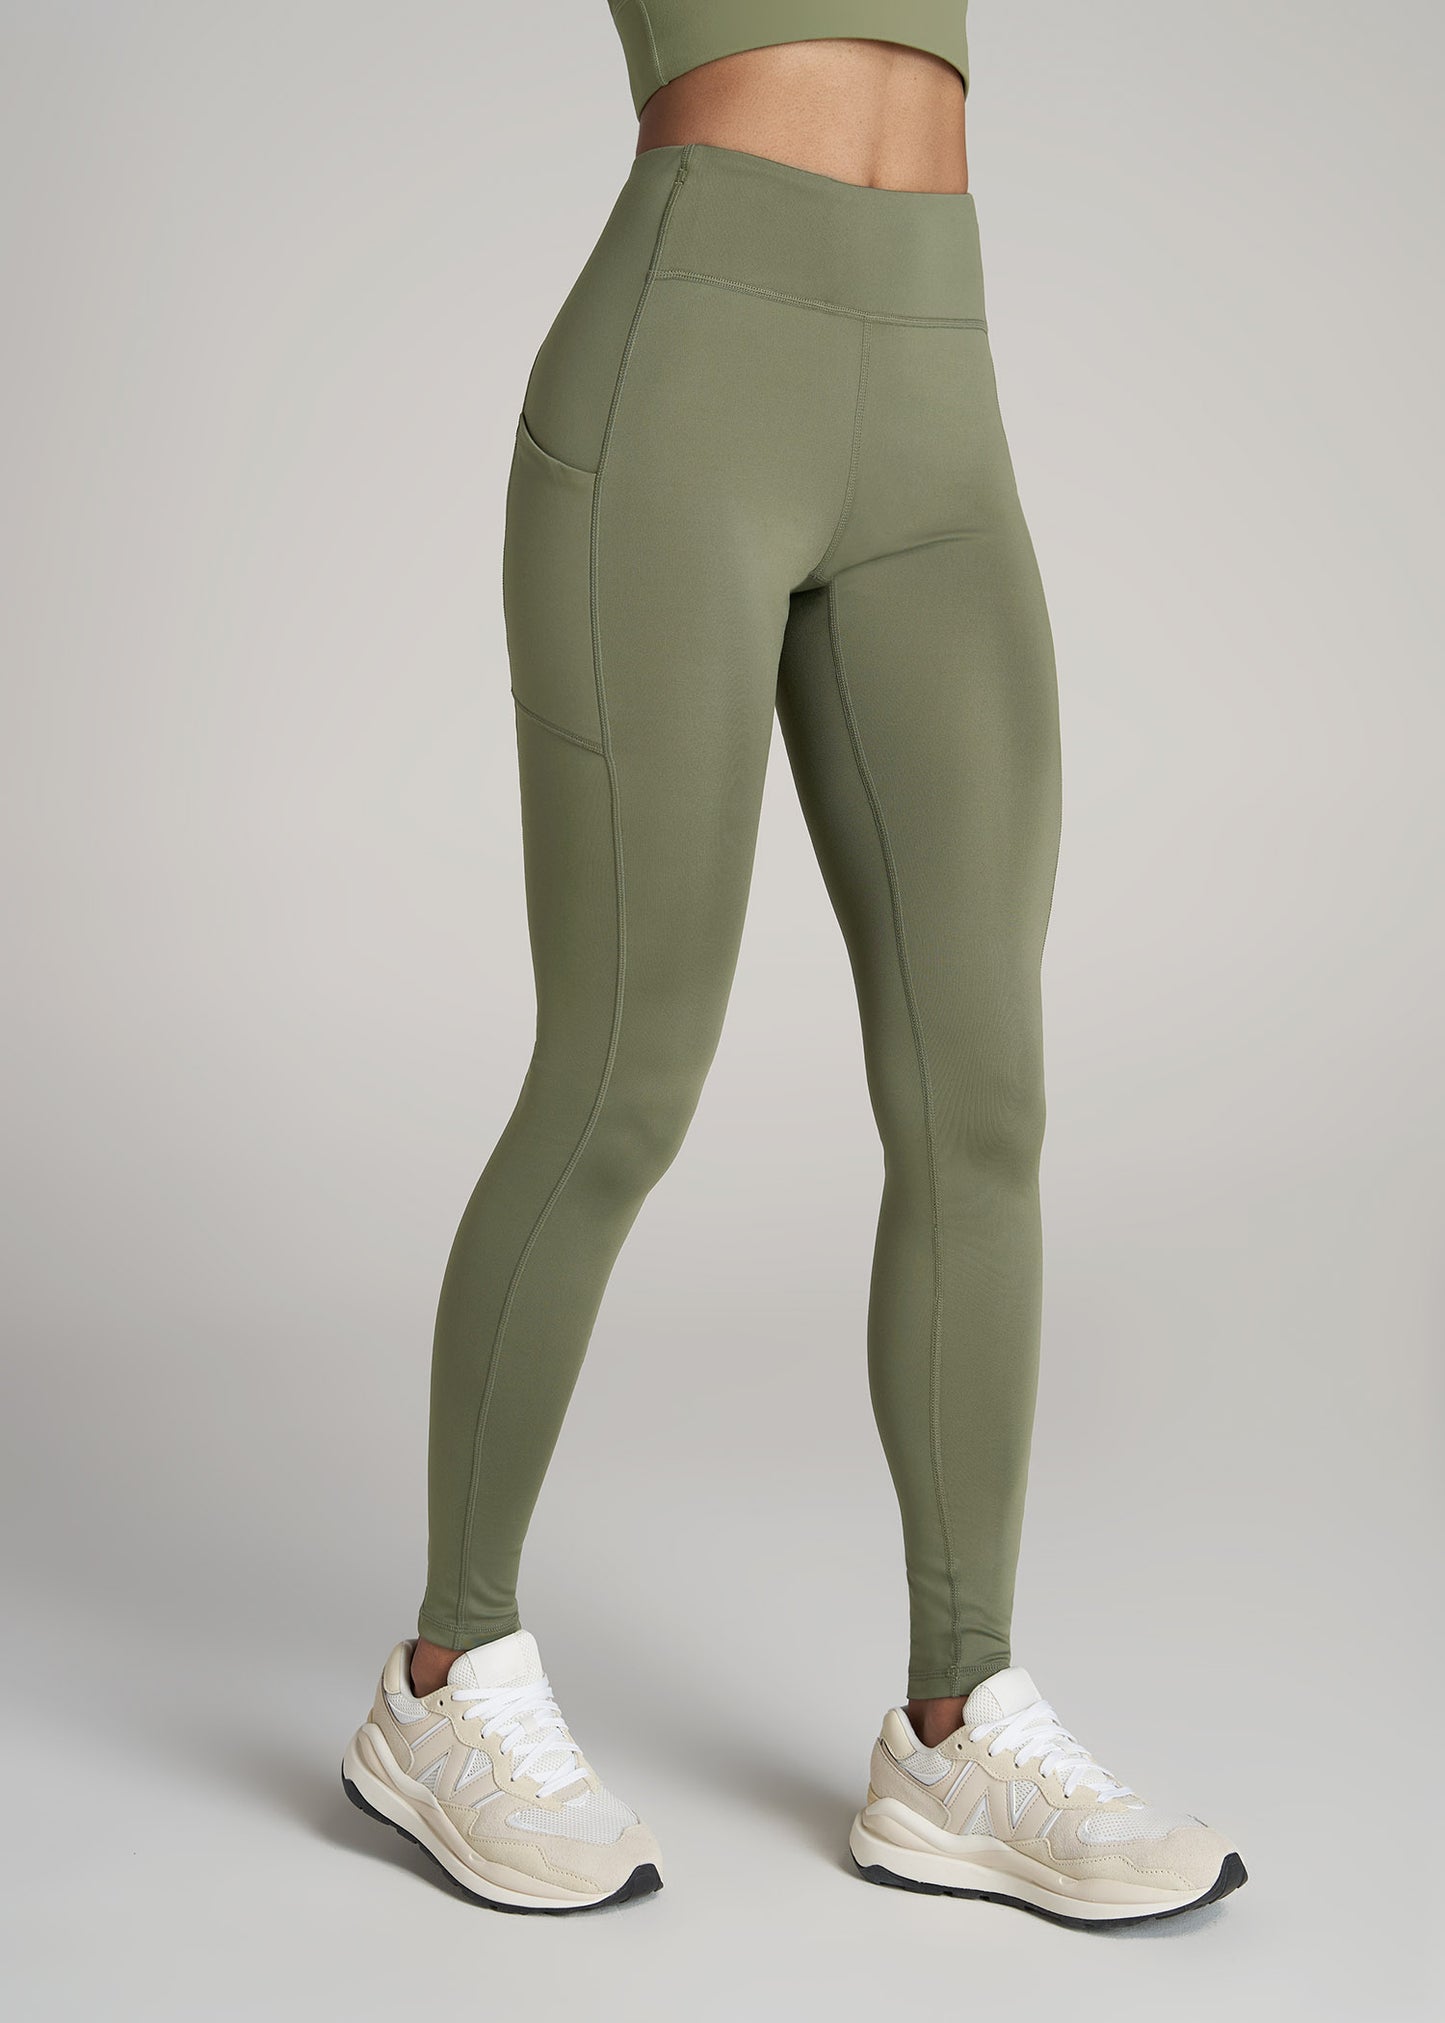 Walifrey Leggings with Pockets Women, High Waisted Sports Leggings for  Women Gym Yoga Army Green SM : : Fashion